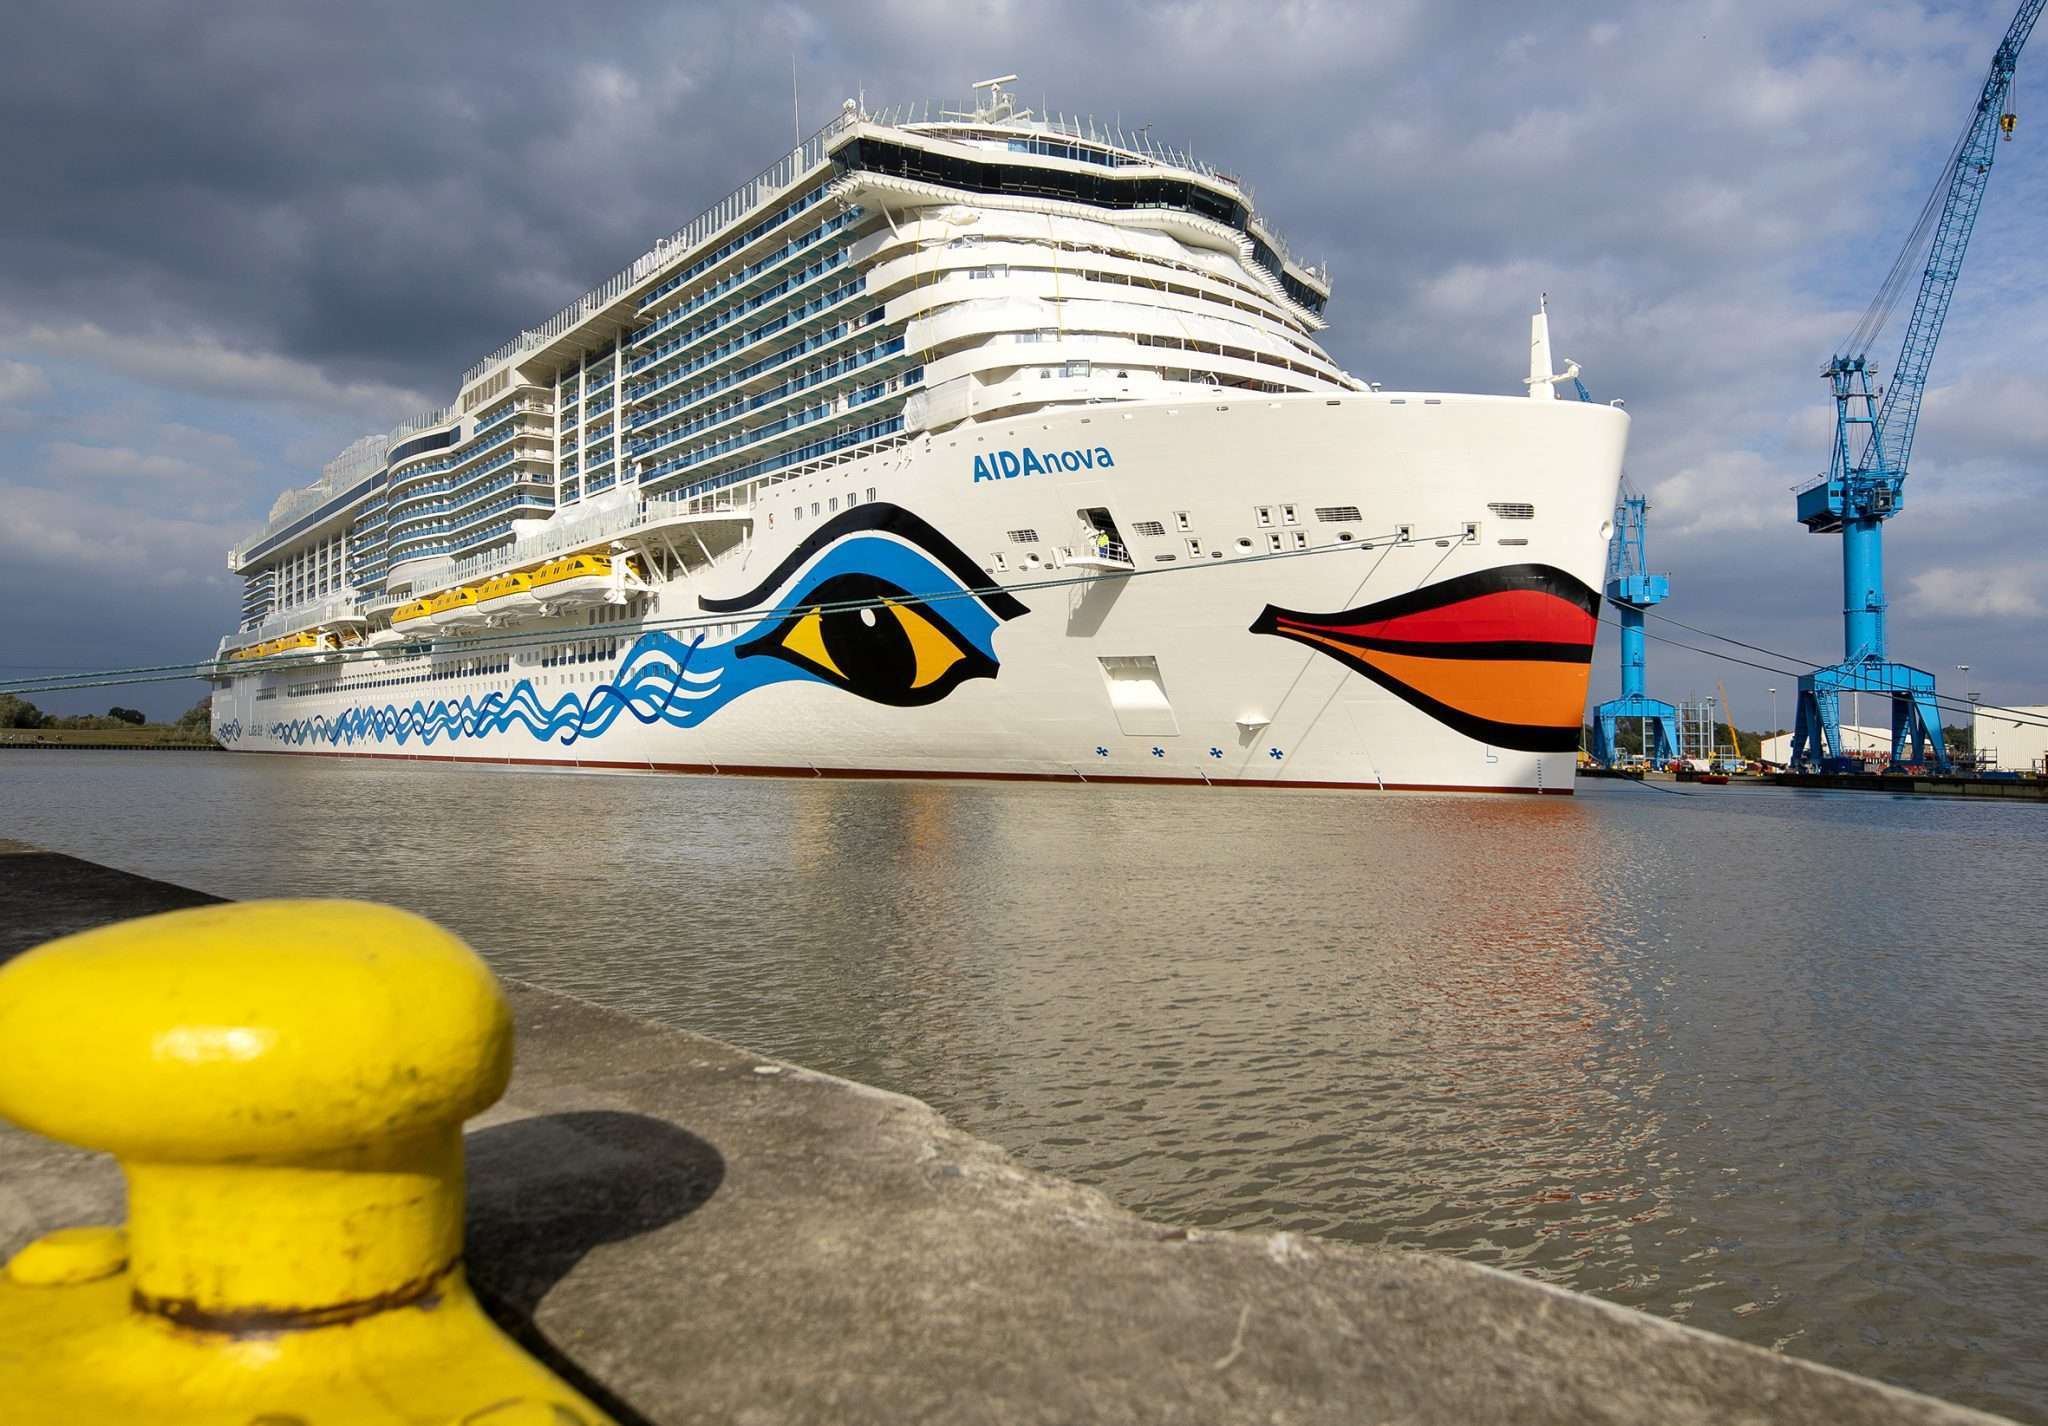 AIDA Schiffsbesichtigungen 2019 mit individuellen Erlebnispaketen in Kiel oder Warnemünde